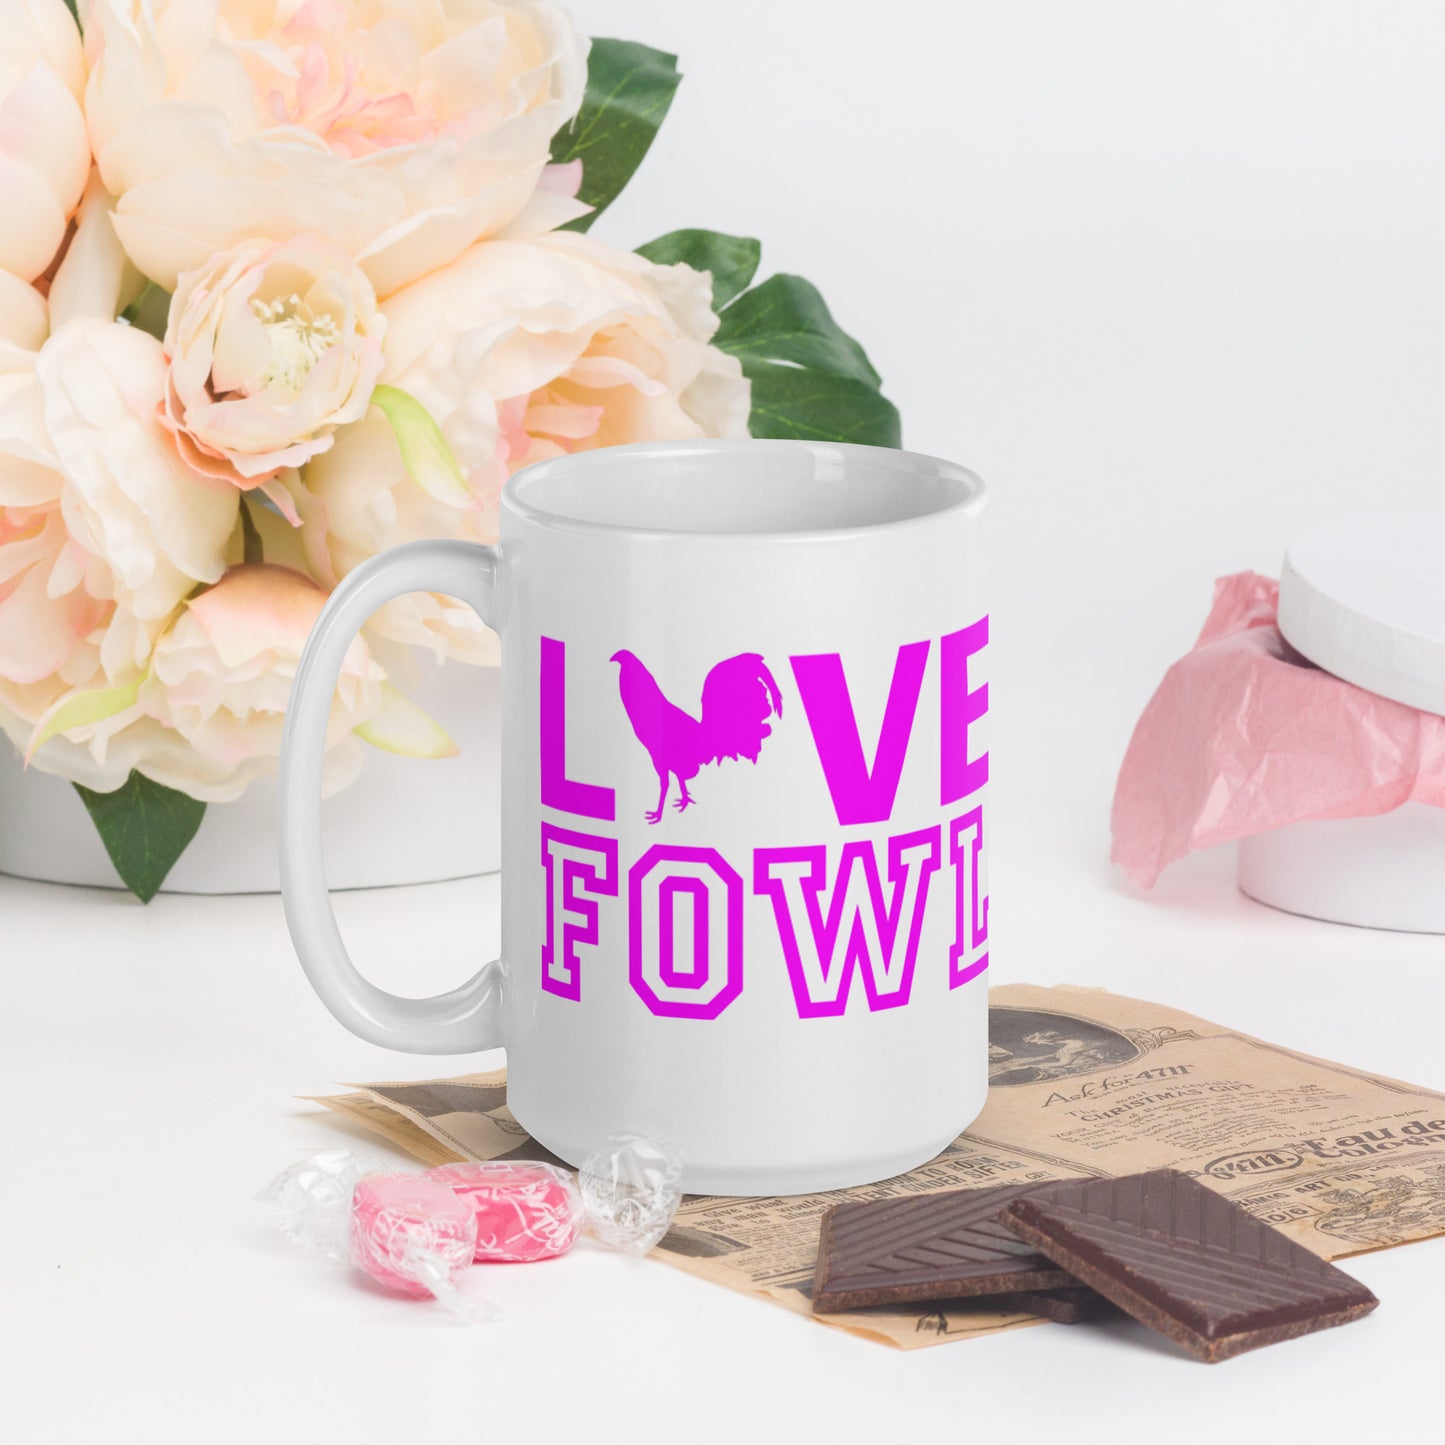 VS LOVE FOWL PINK LEAF Gamefowl Rooster White Glossy Mug